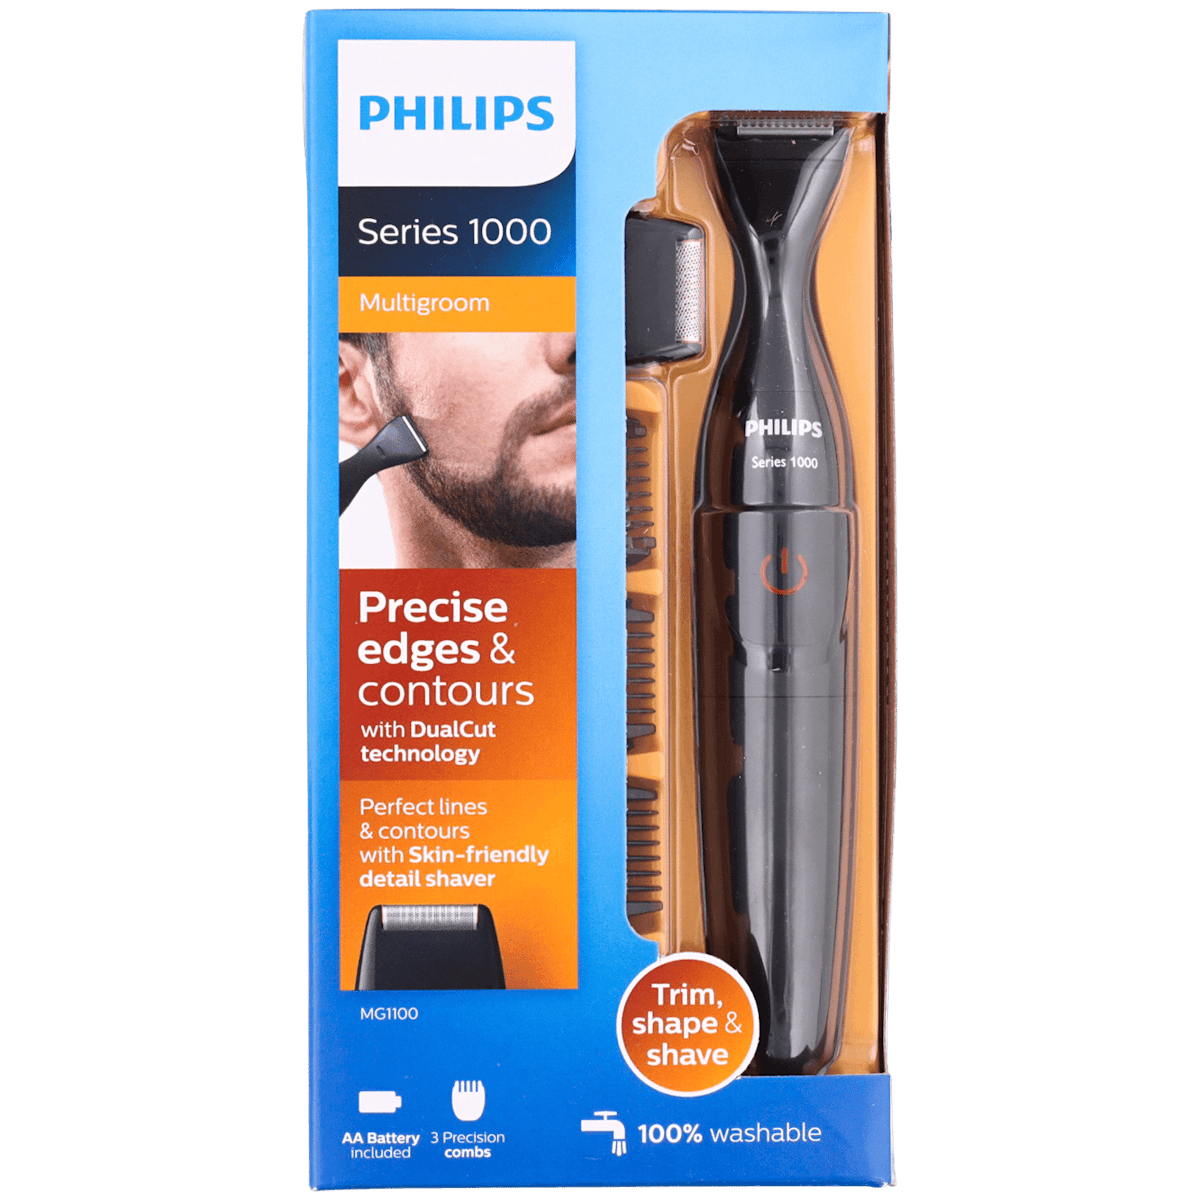 Philips Multigroom Series 1000